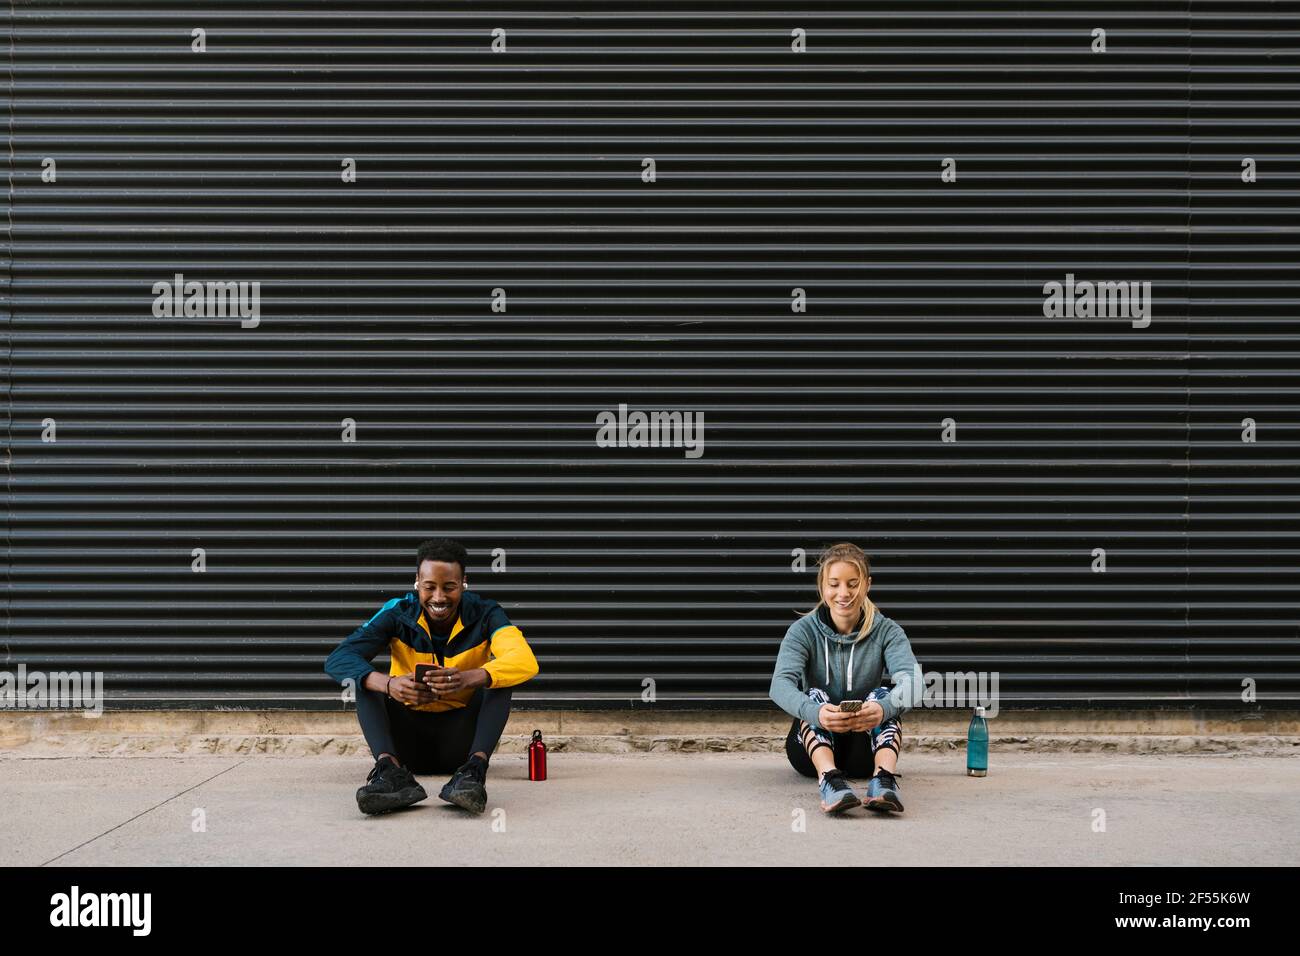 Männliche und weibliche Sportsperson, die Mobiltelefon benutzt, während sie dagegen sitzt Wand Stockfoto